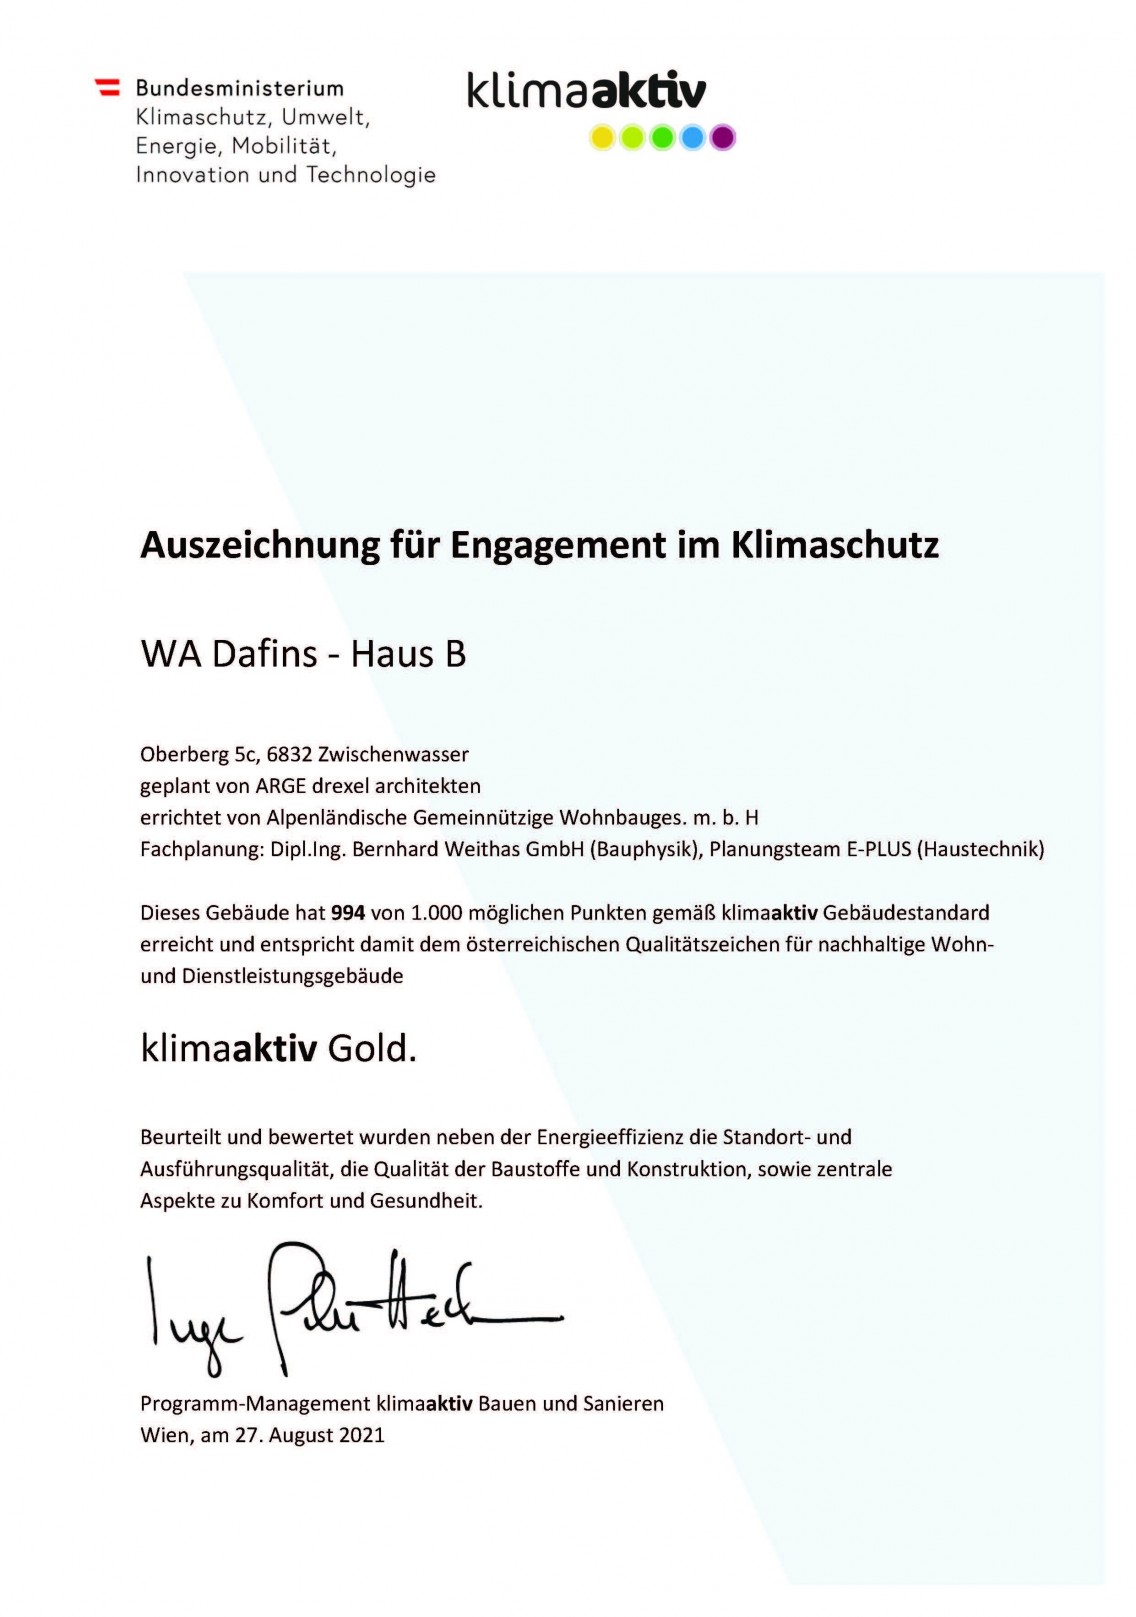 Auszeichnung für Engagement im Klimaschutz - WA Dafins - Haus B